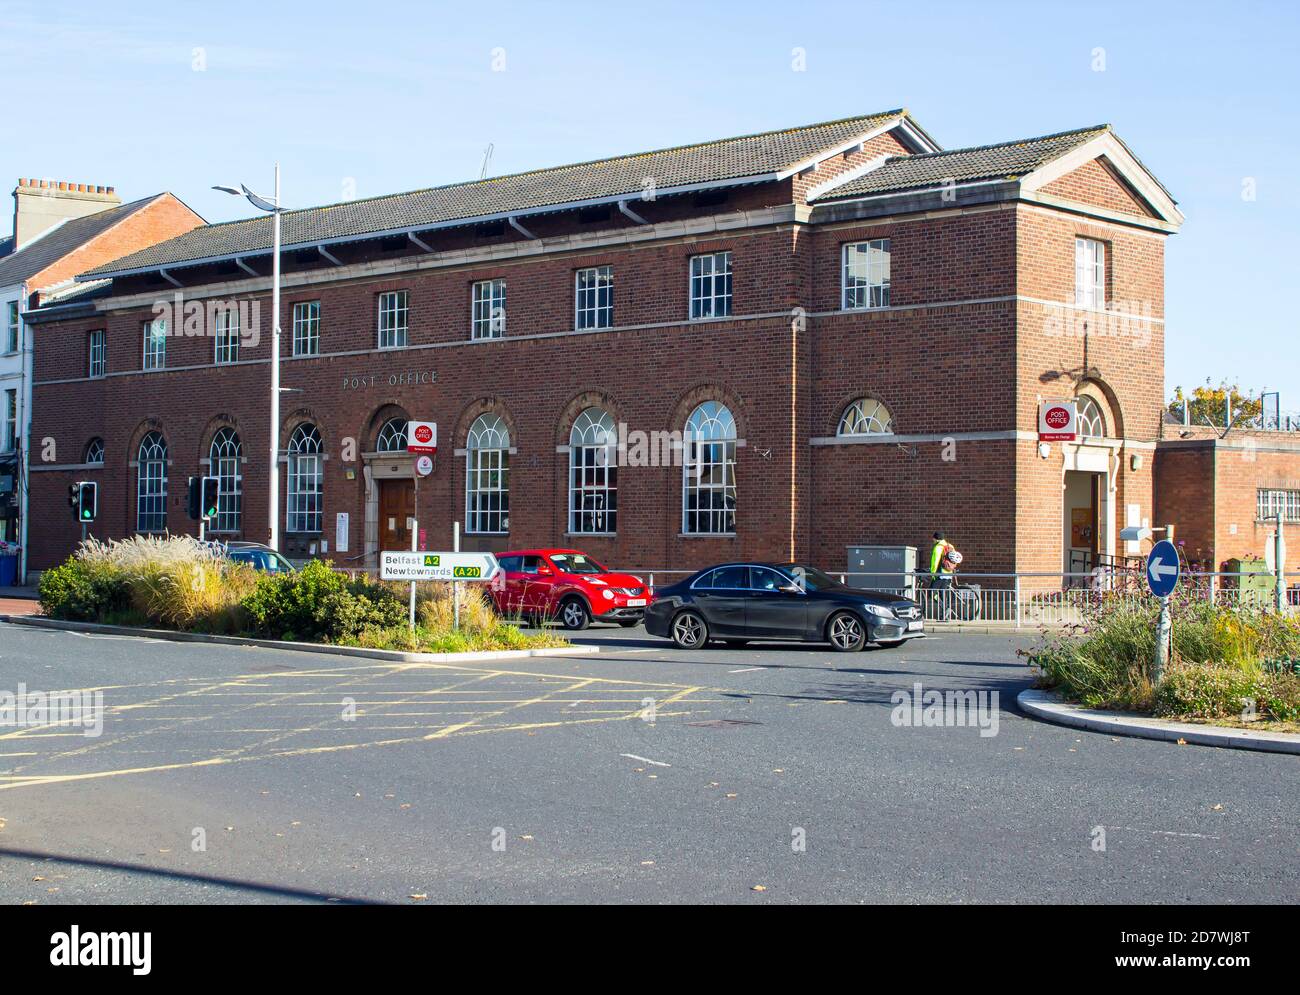 23 octobre 2020 la grande brique rouge construit Royal Mail Bureau de poste sur la rue principale dans le comté de Bangor en bas Irlande du Nord sur un beau soleil afte Banque D'Images